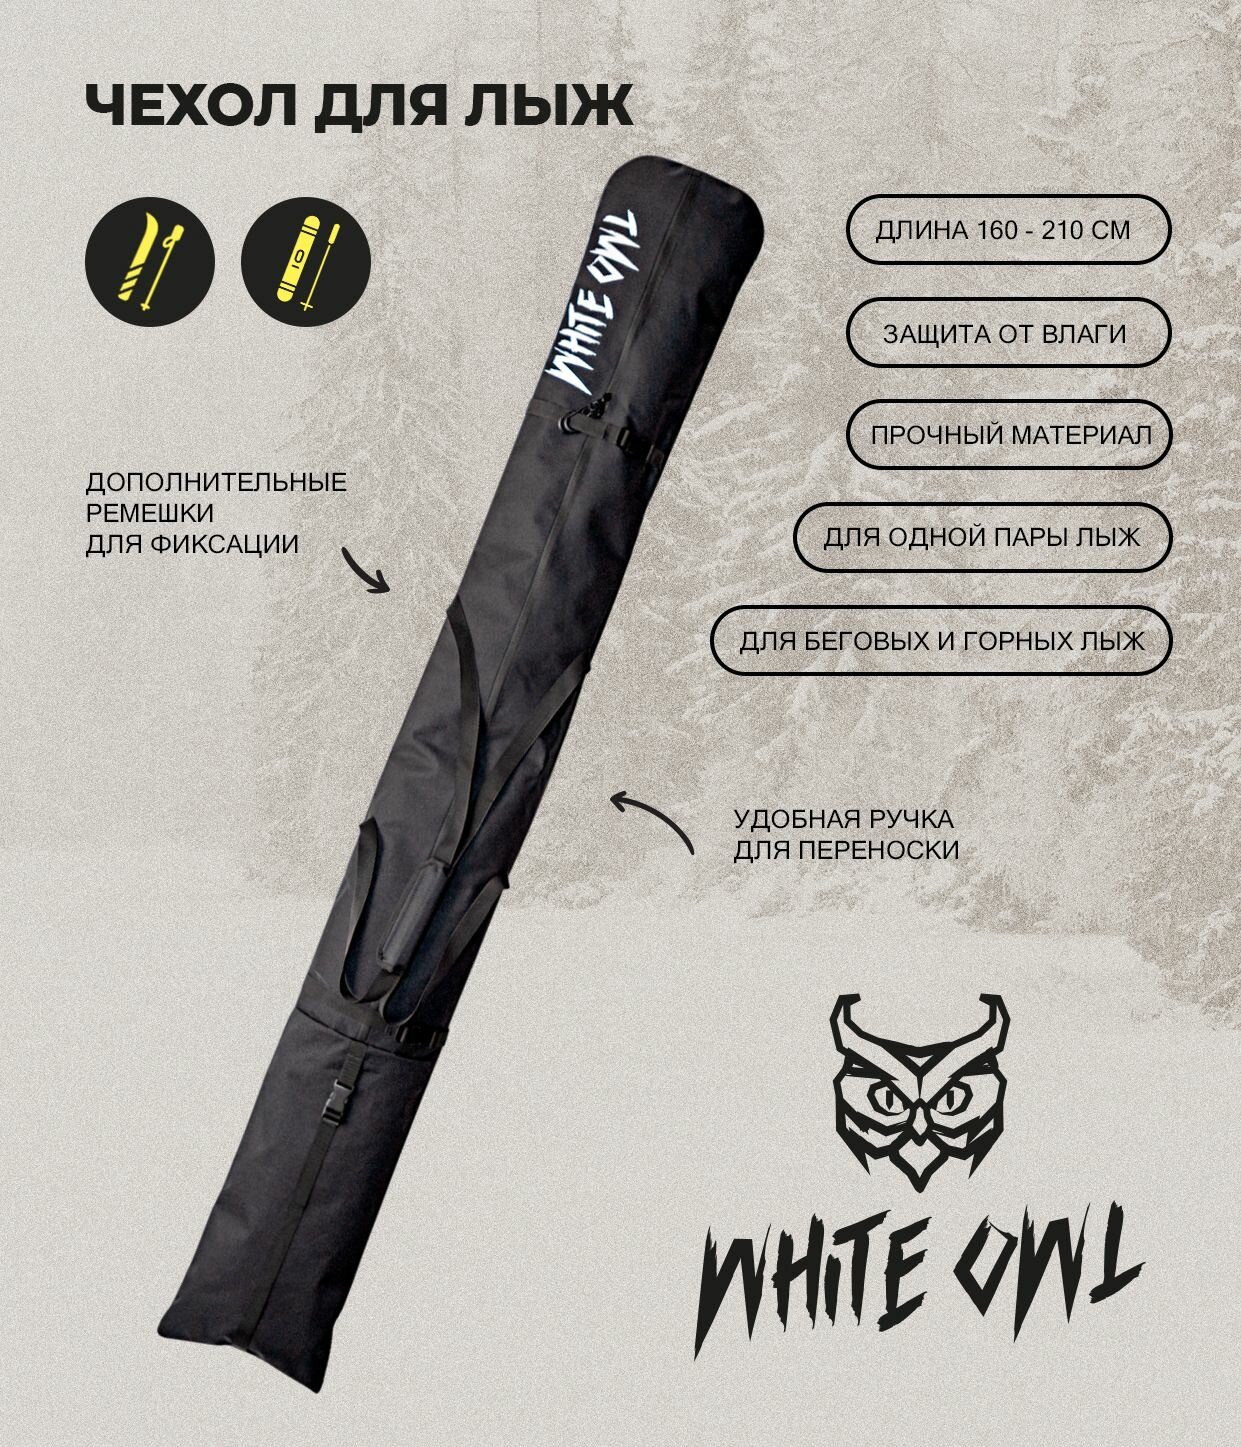 Чехол для горных или беговых лыж White Owl, 160-210 см, черный